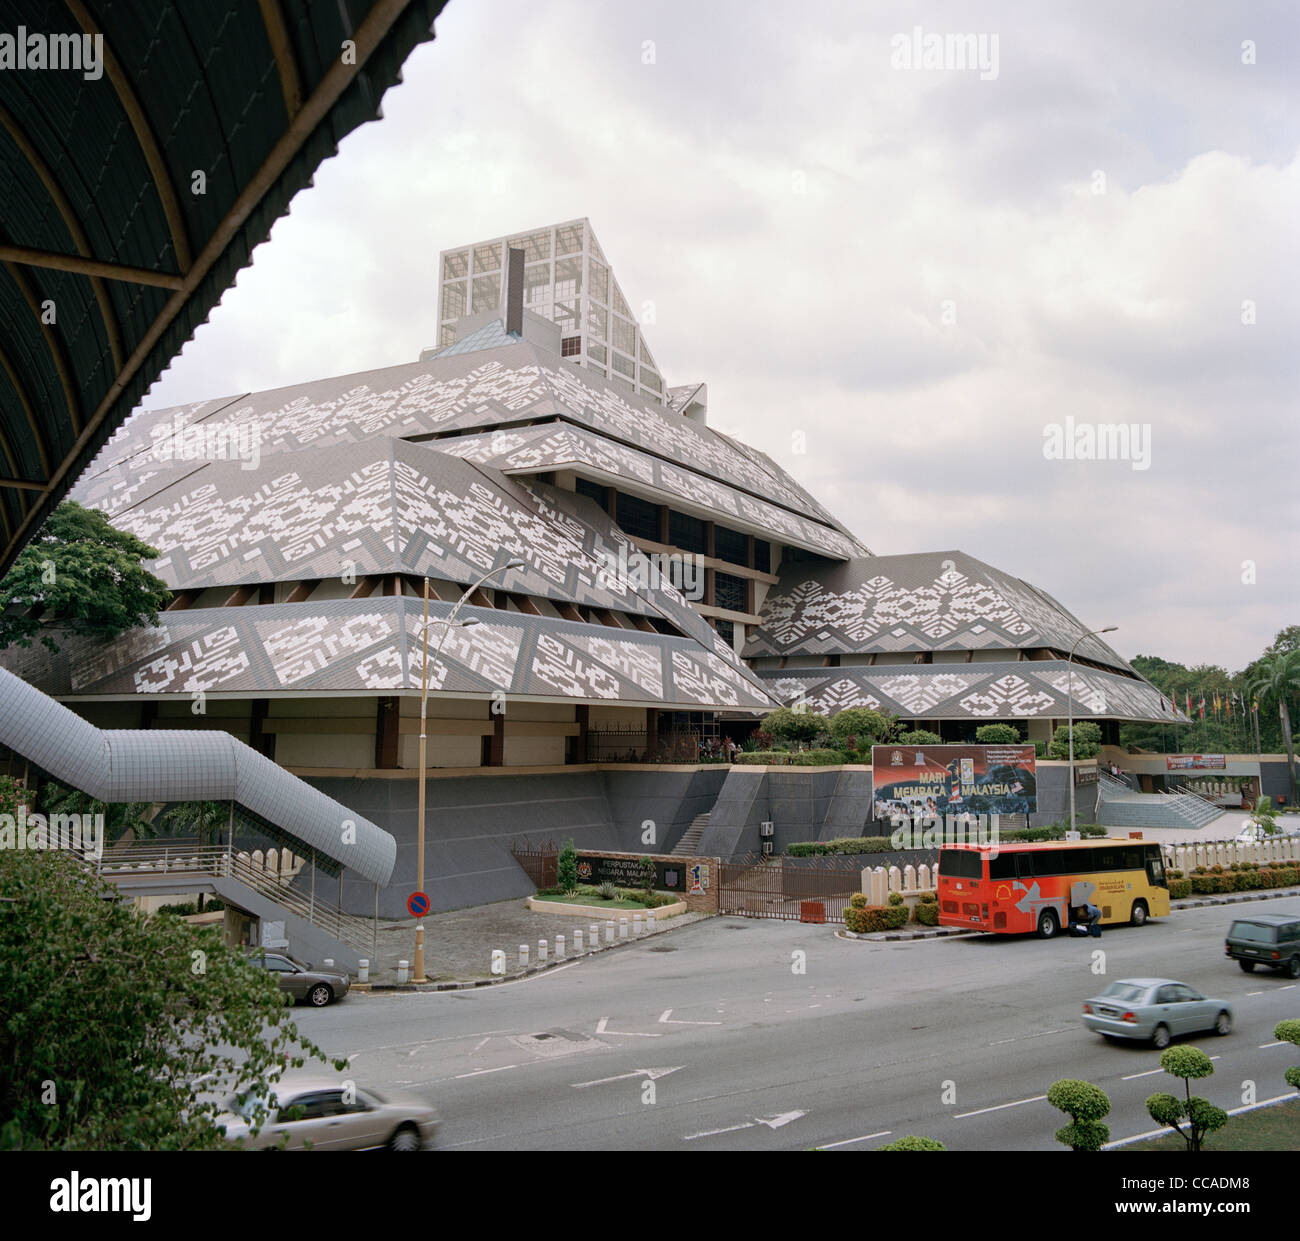 La Bibliothèque nationale de Malaisie à Kuala Lumpur en Malaisie en Extrême-Orient Asie du sud-est. La culture de la Malaisie Voyage Bibliothèques Banque D'Images